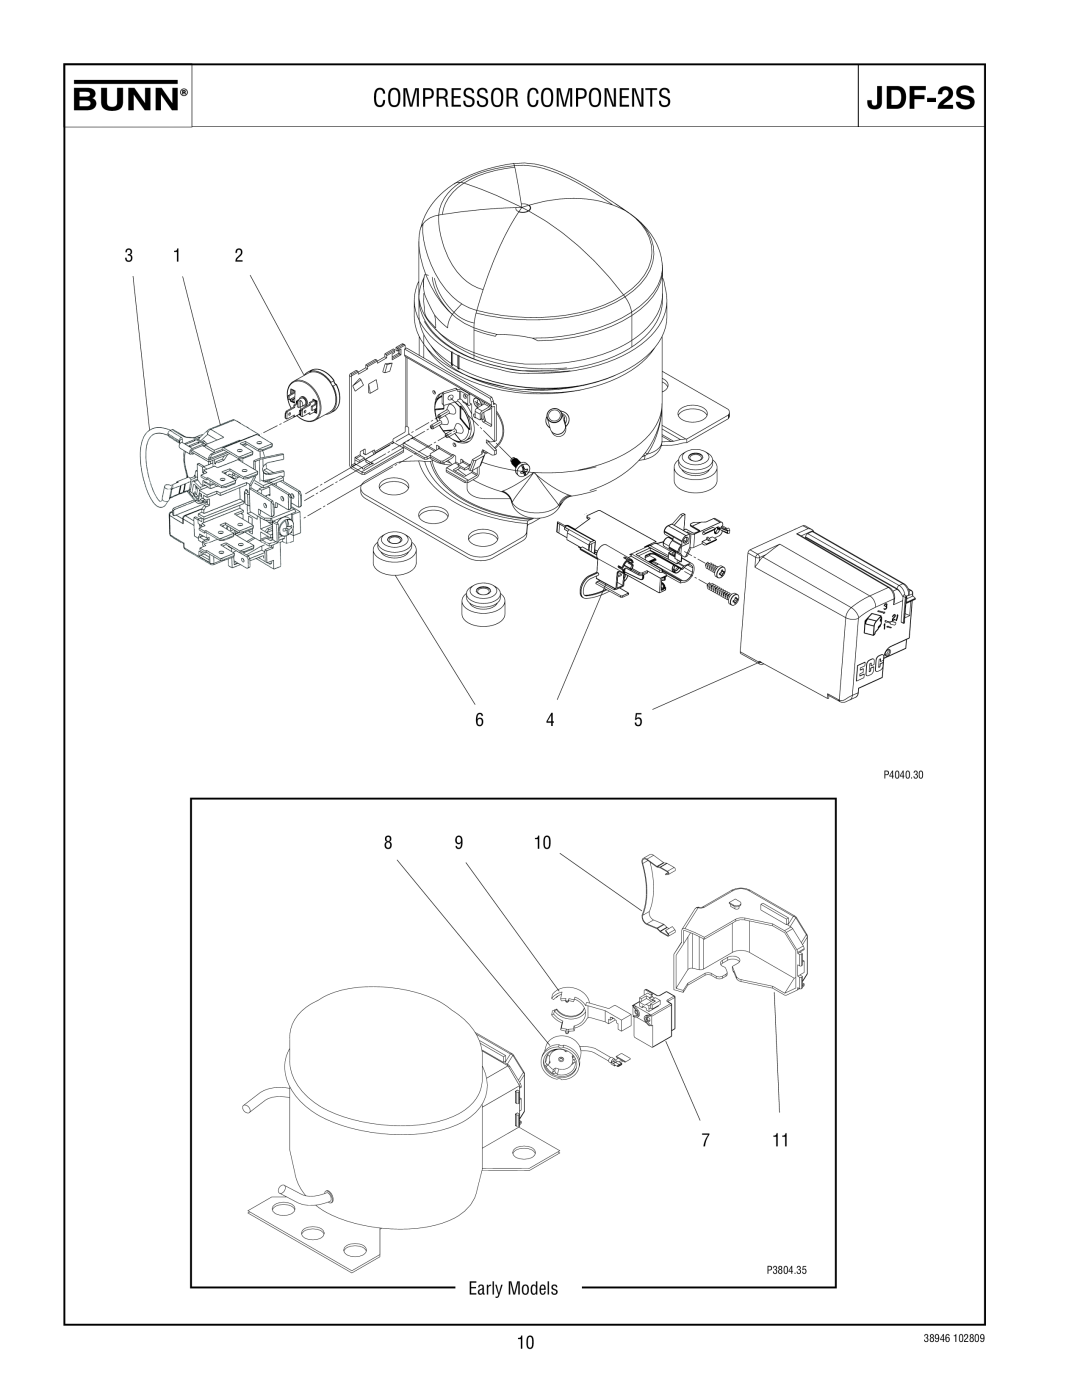 Bunn JDF-2S manual Compressor Components, Early Models 